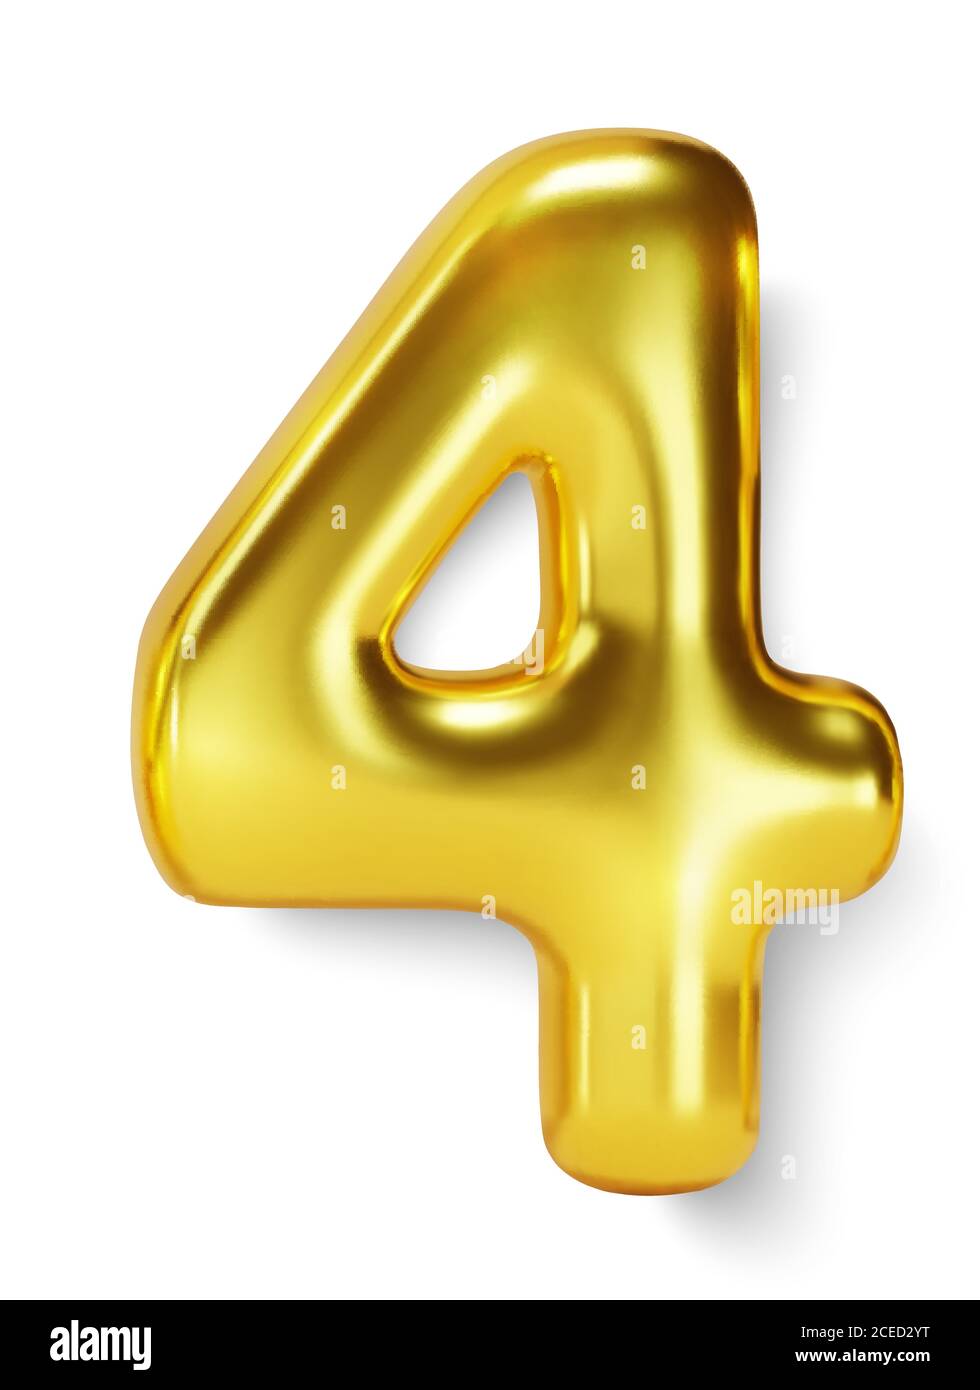 Trekken Bijlage Werkelijk Golden Number Balloon 4 Four. Vector realistic 3d character Stock Vector  Image & Art - Alamy